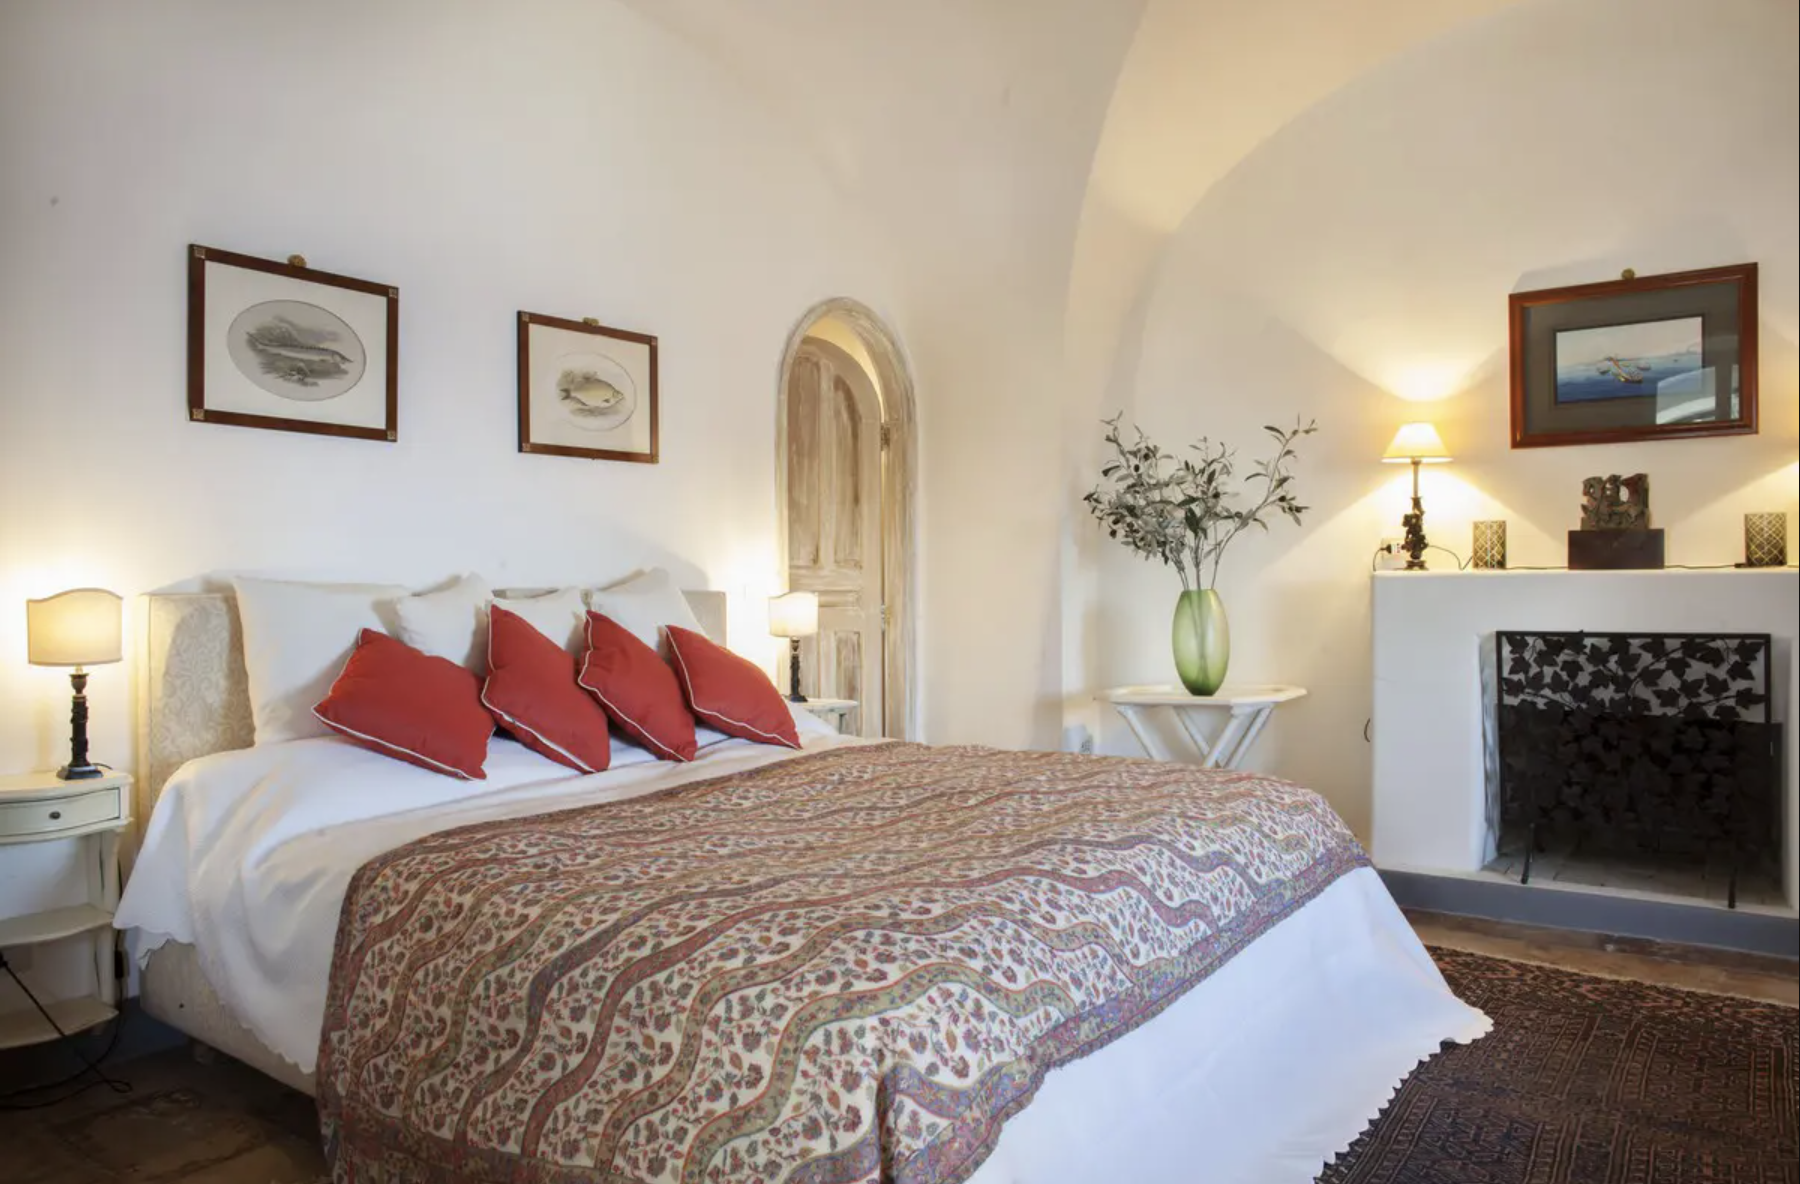 Francis York Villa Aiano Exclusive Luxury Villa Rental in Capri Slim Aarons 20.png